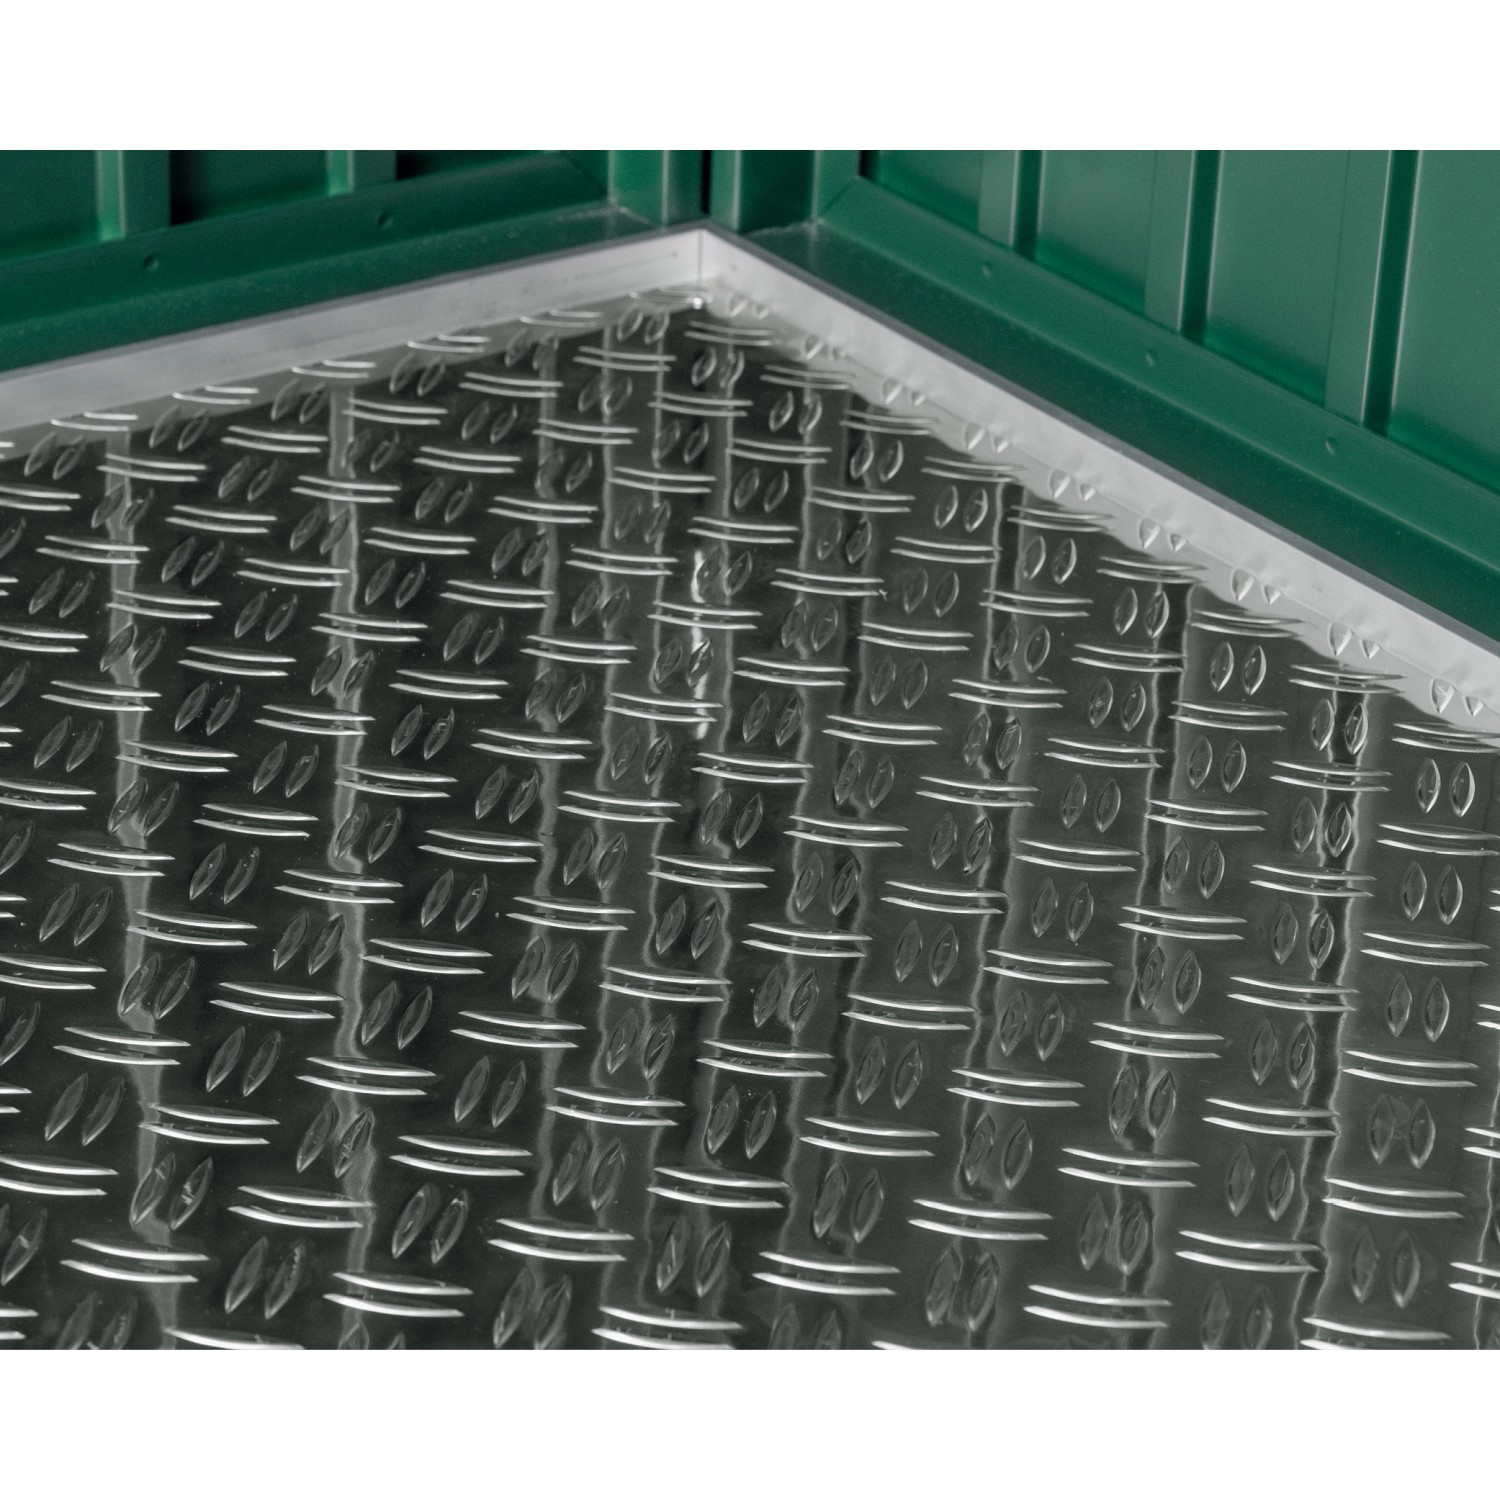 EcoStar Aluminium-Riffelblechboden für das Gerätehaus Typ 3